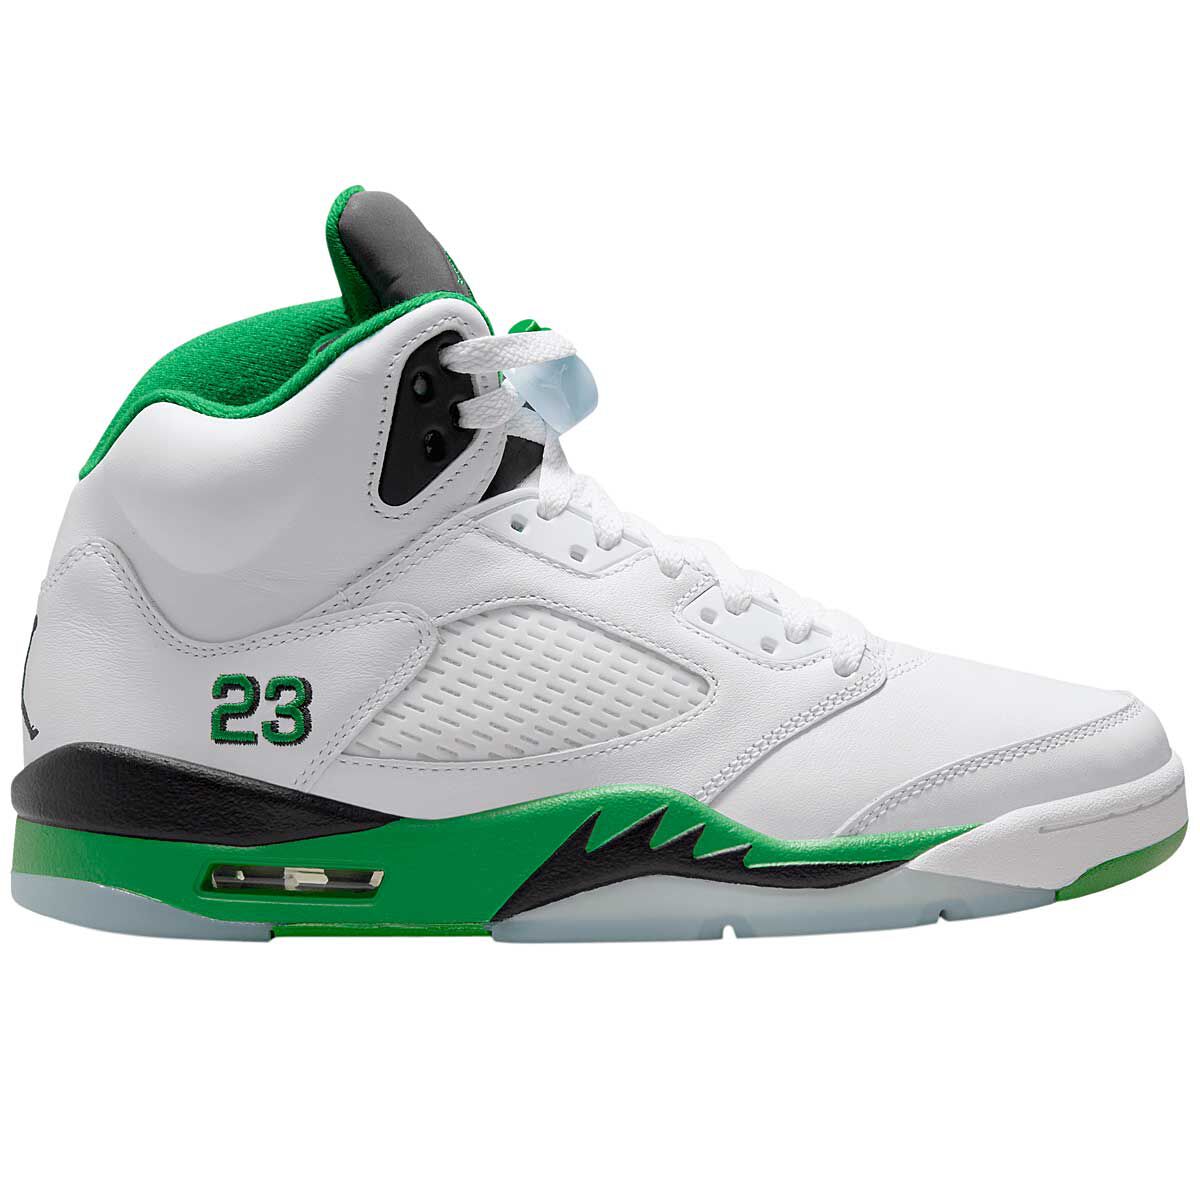 Air Jordan 5 | Comprar Retro Jordans en KICKZ.com